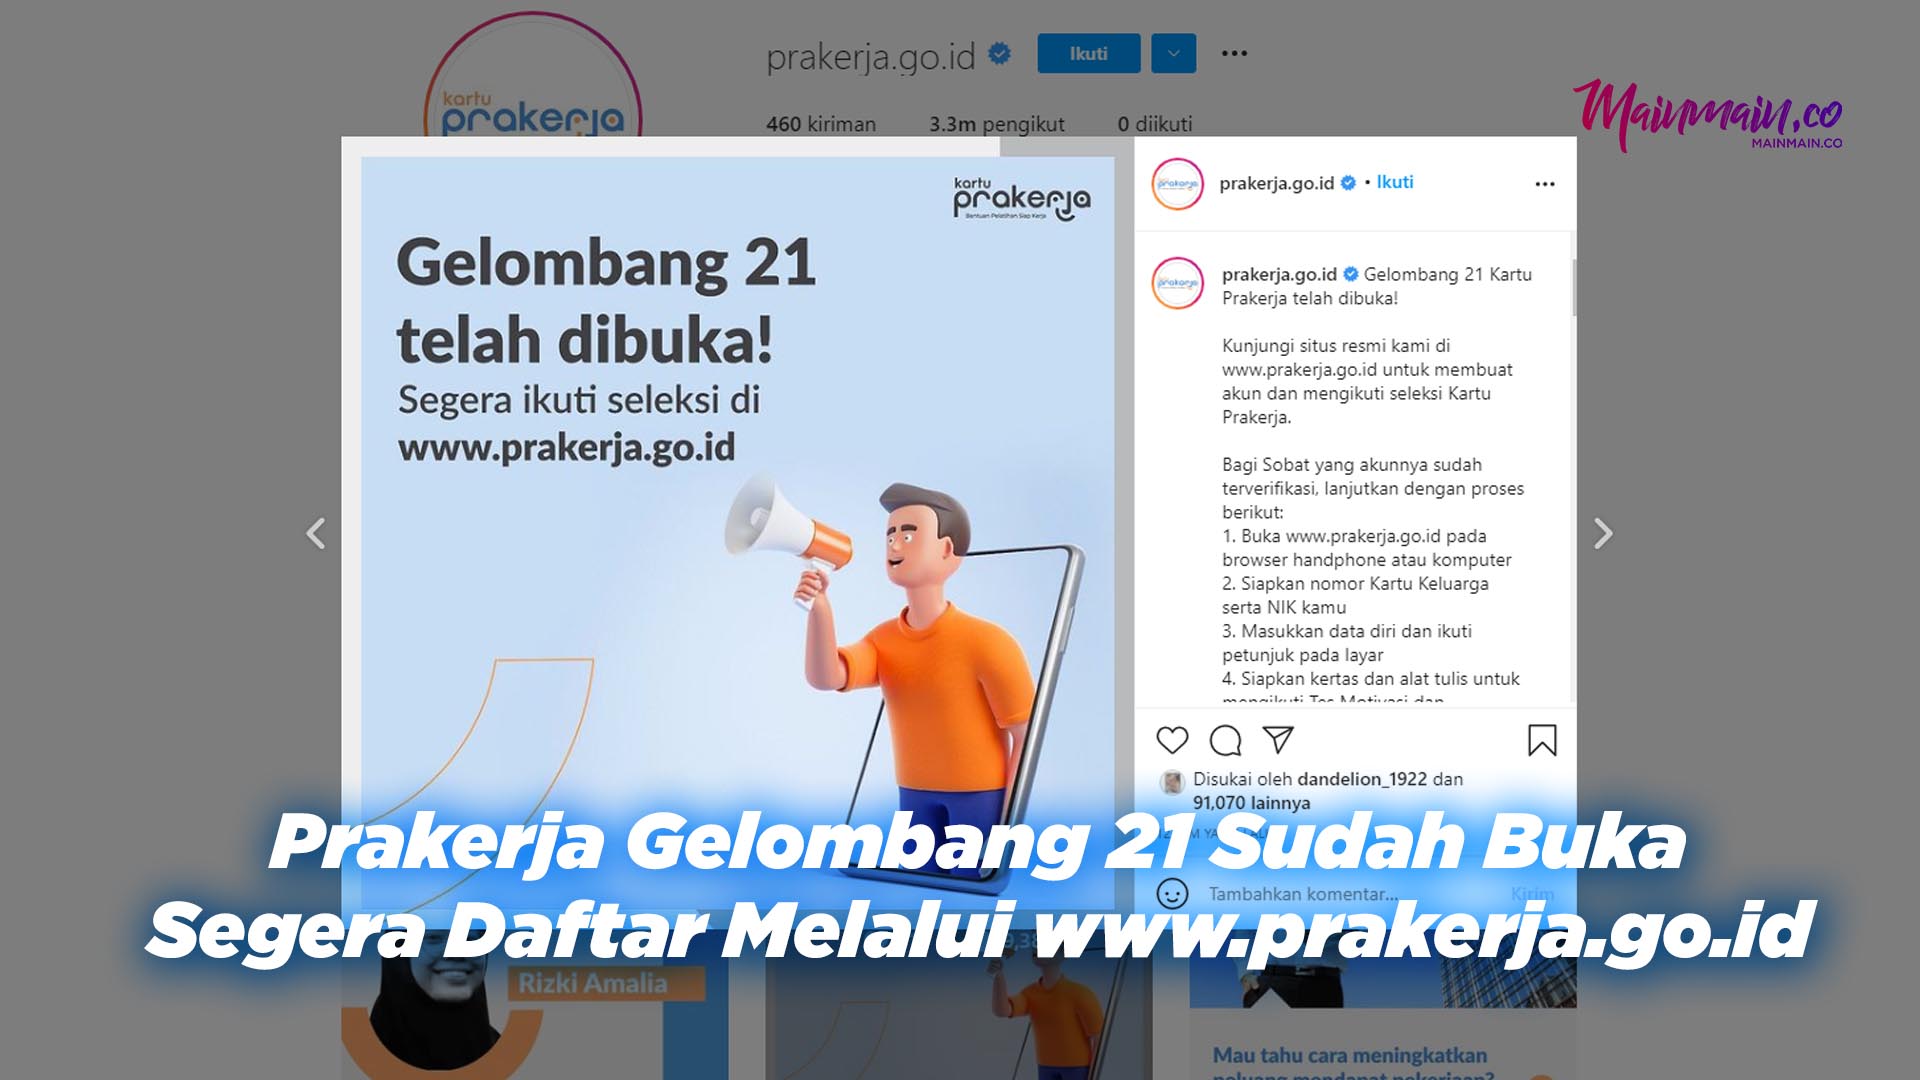 Prakerja Gelombang 21 Sudah Buka, Segera Daftar Melalui www.prakerja.go.id